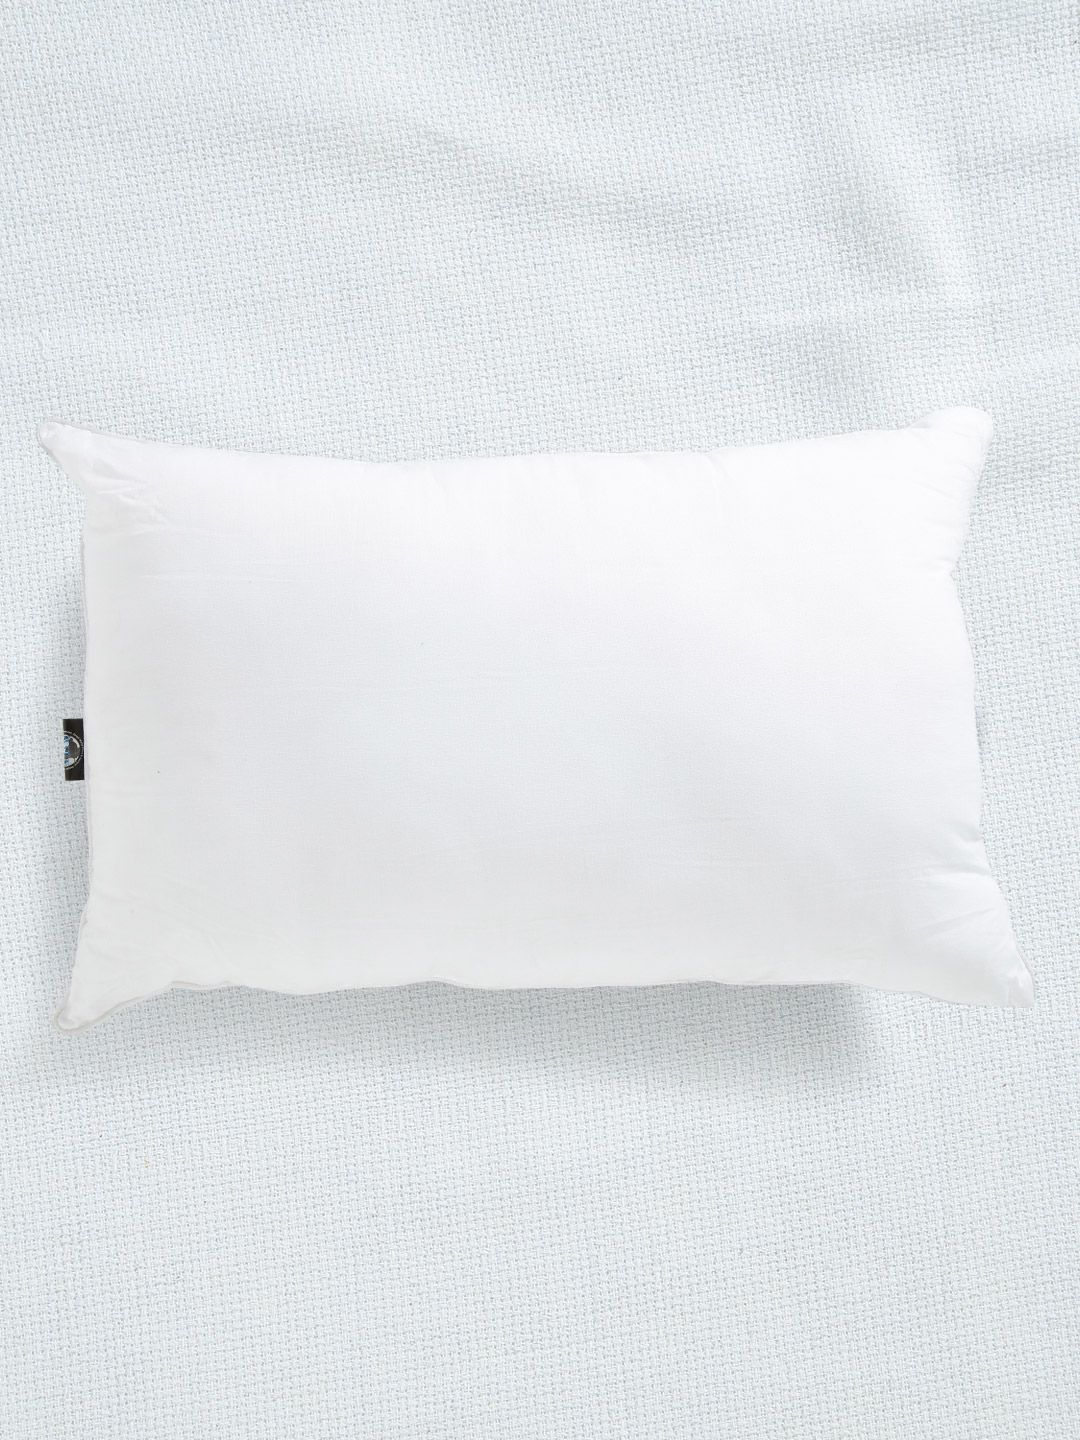 SWHF White Single Fibre Rectangular King Sleep Pillow Price in India